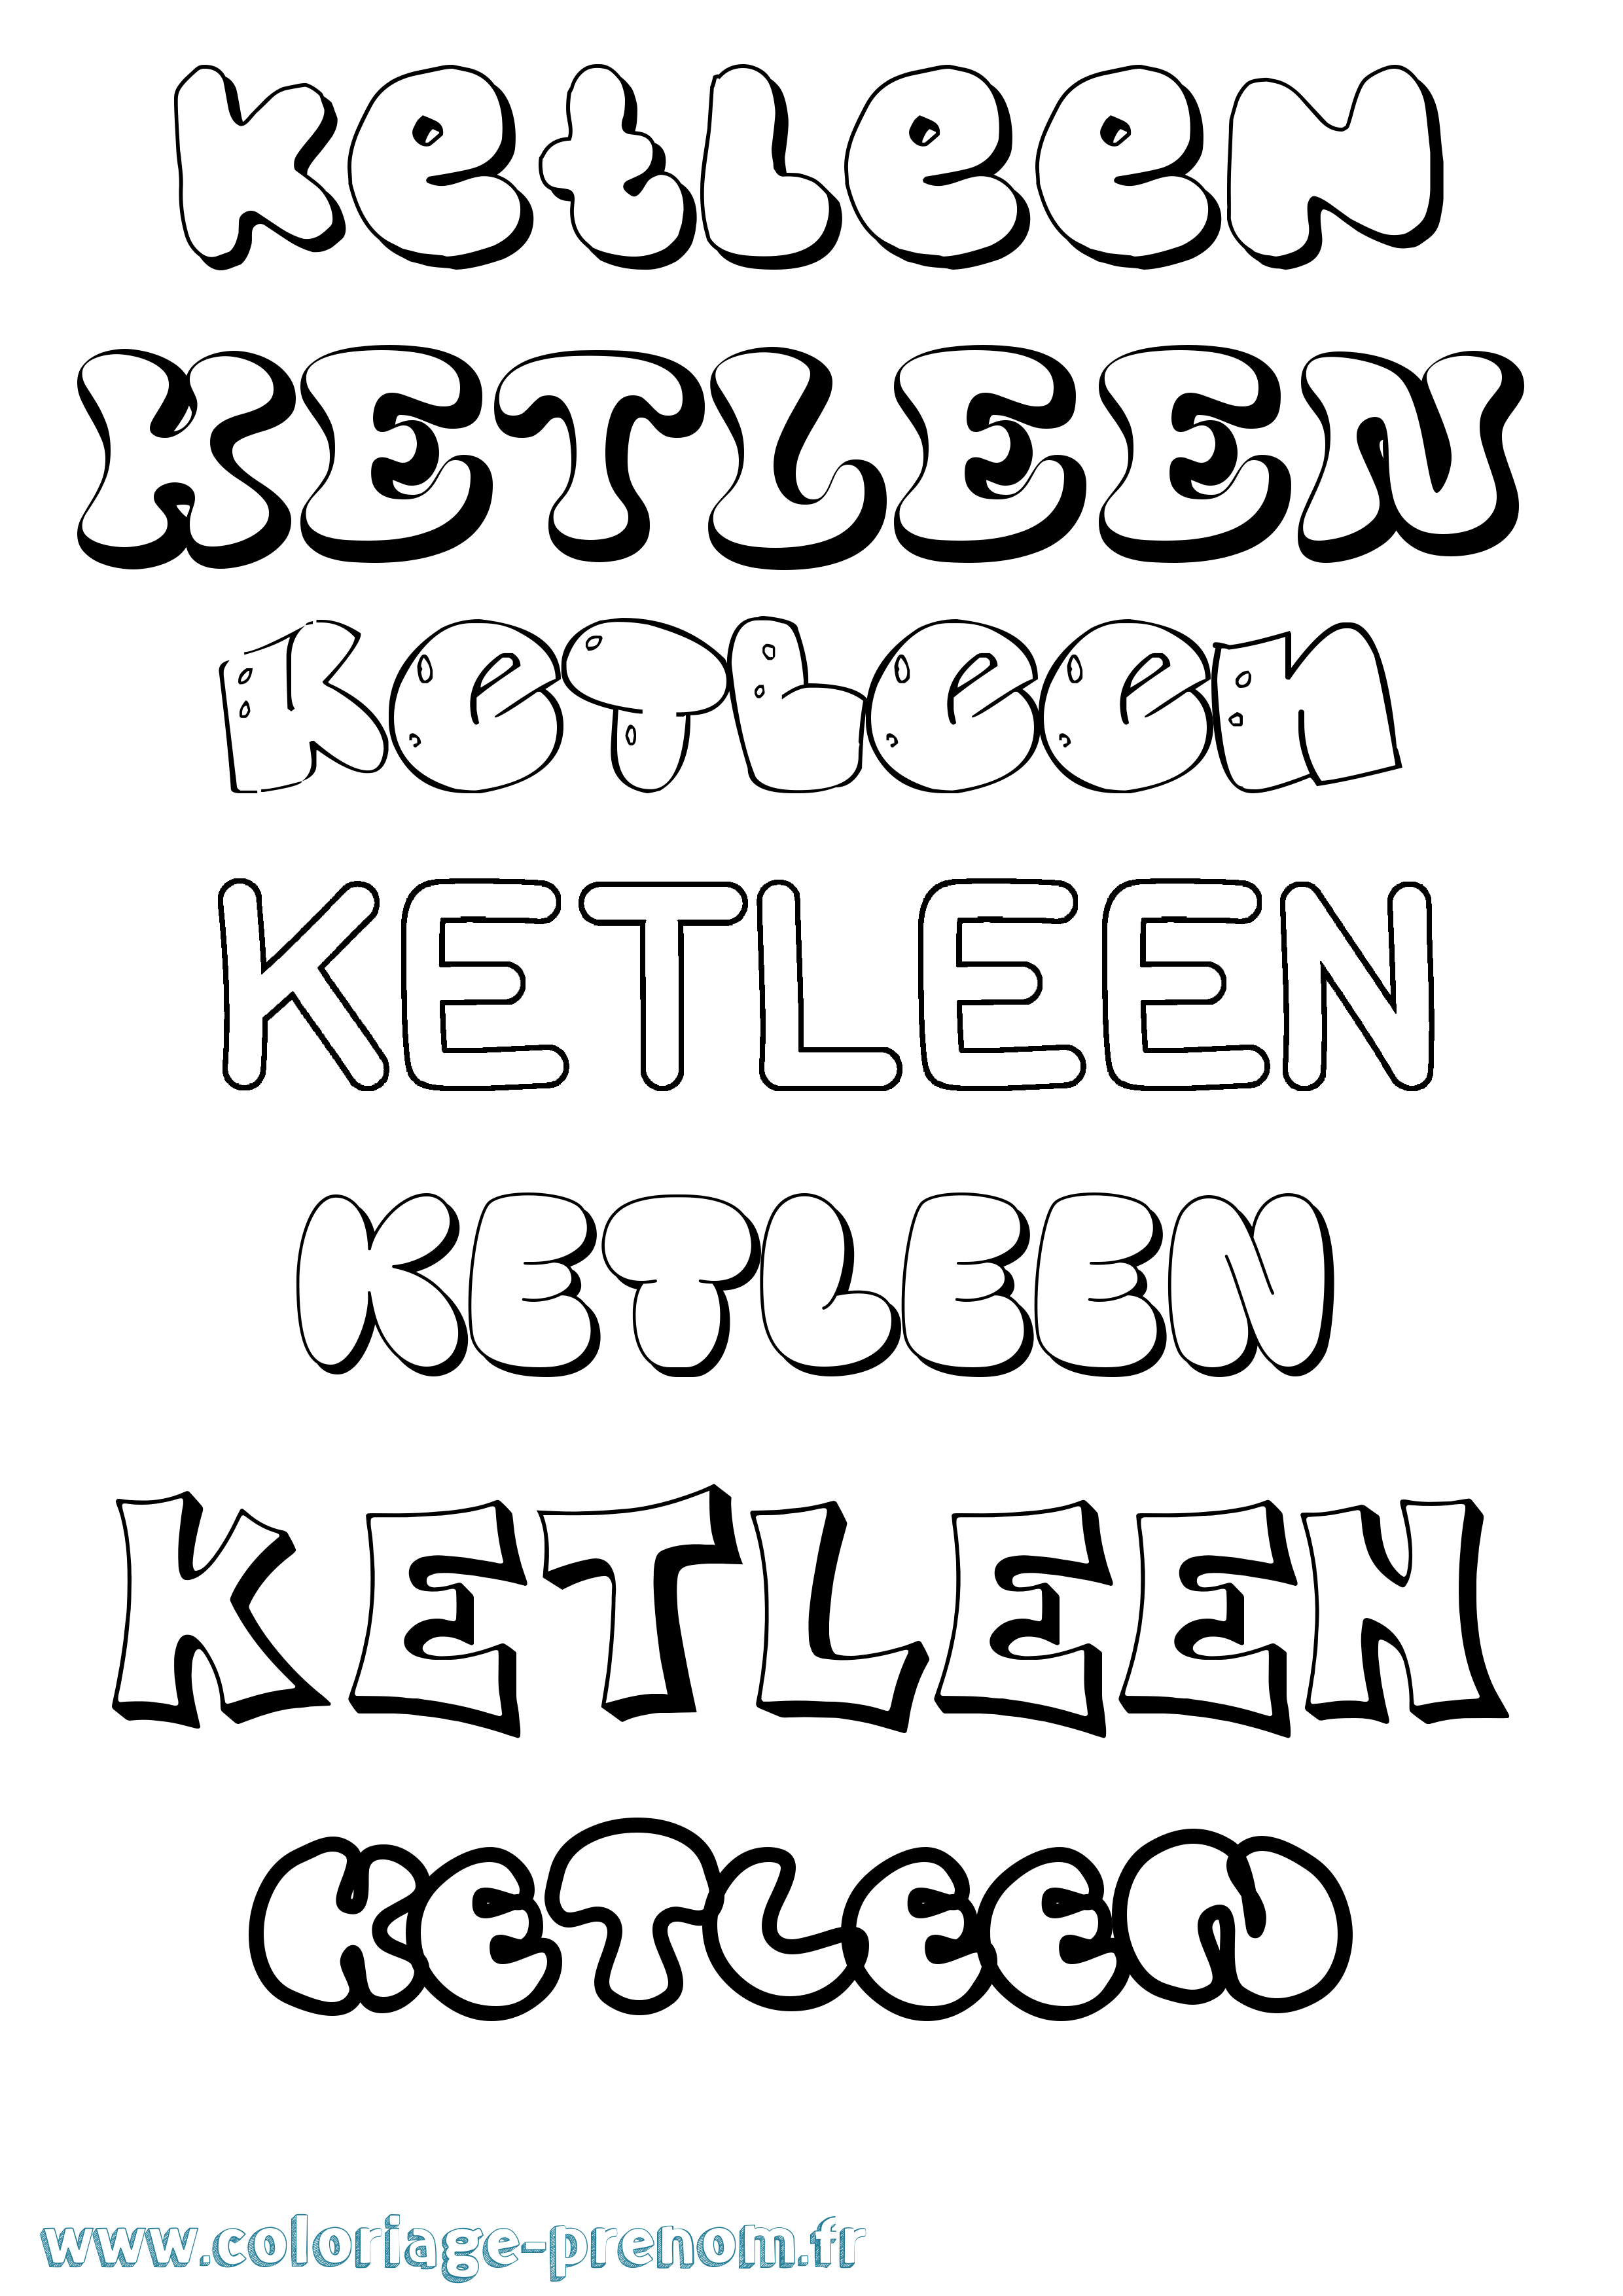 Coloriage prénom Ketleen Bubble